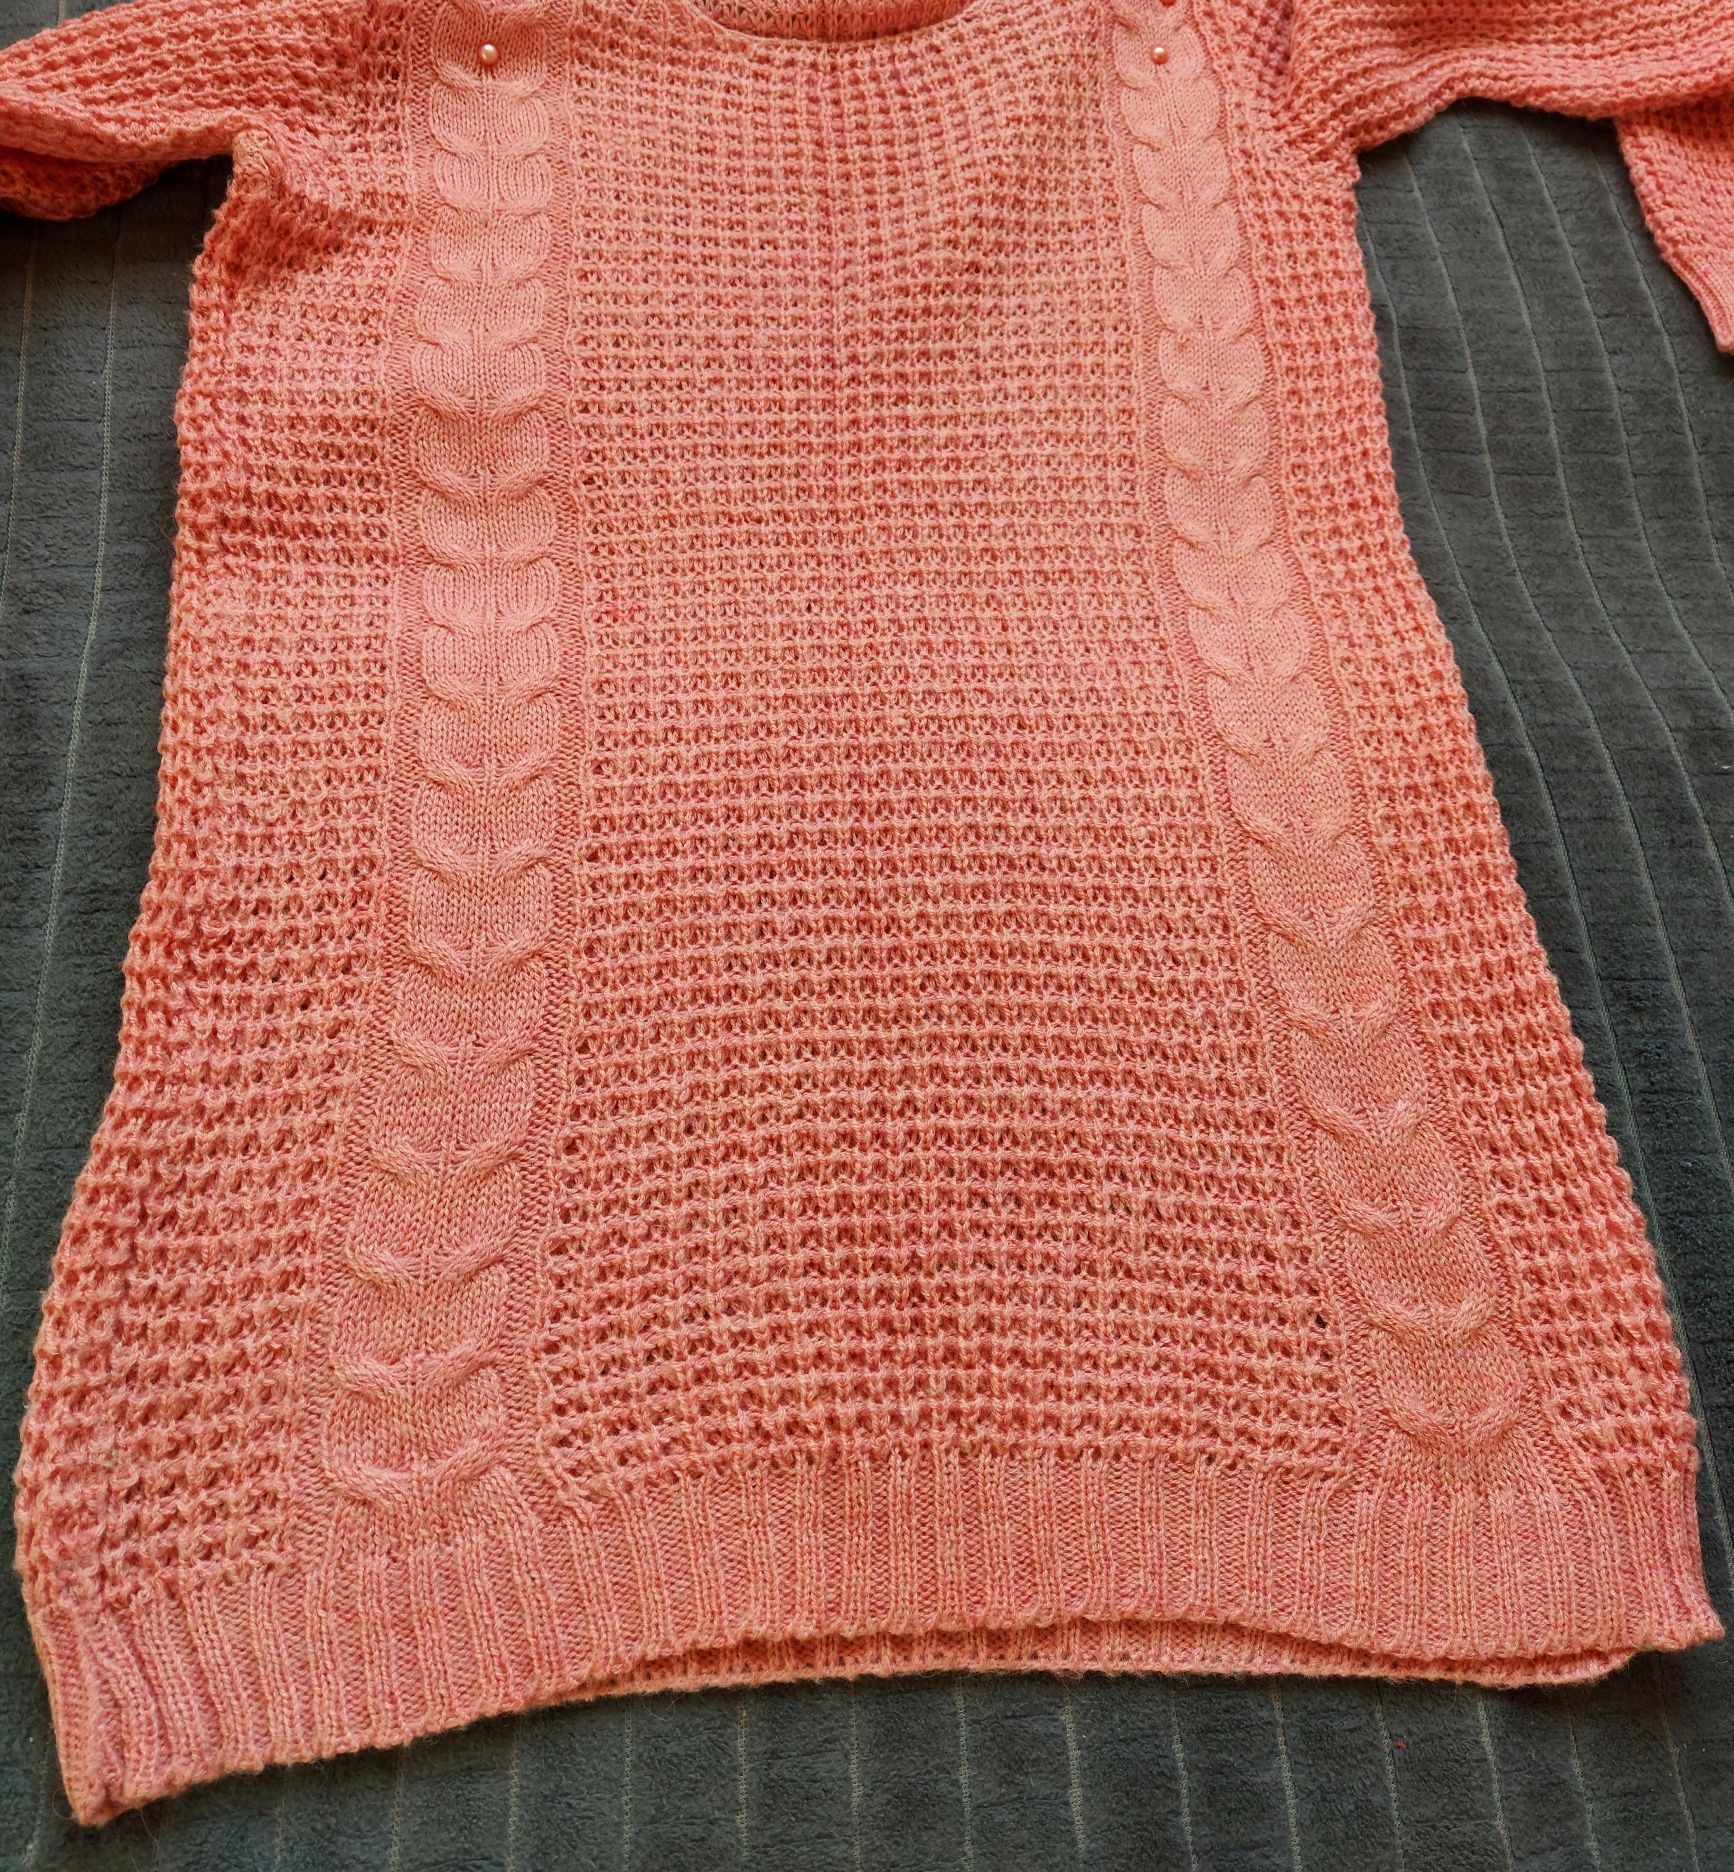 Sweterek różowy z perełkami r uniwersalny M/L jak nowy